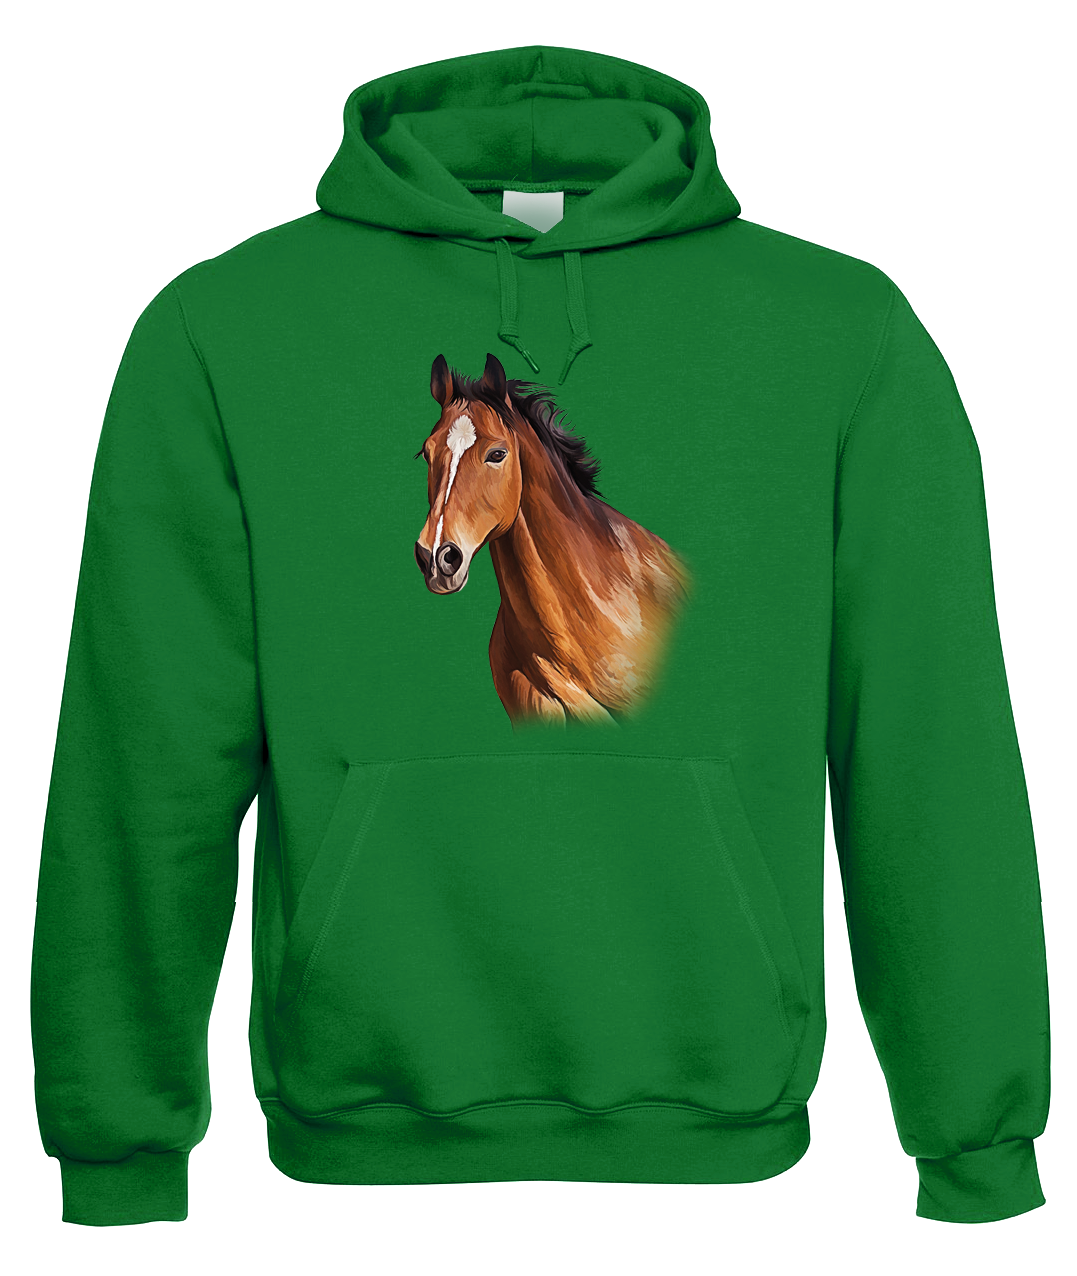 Mikina s koněm - Hnědák Velikost: XL, Barva: Zelená